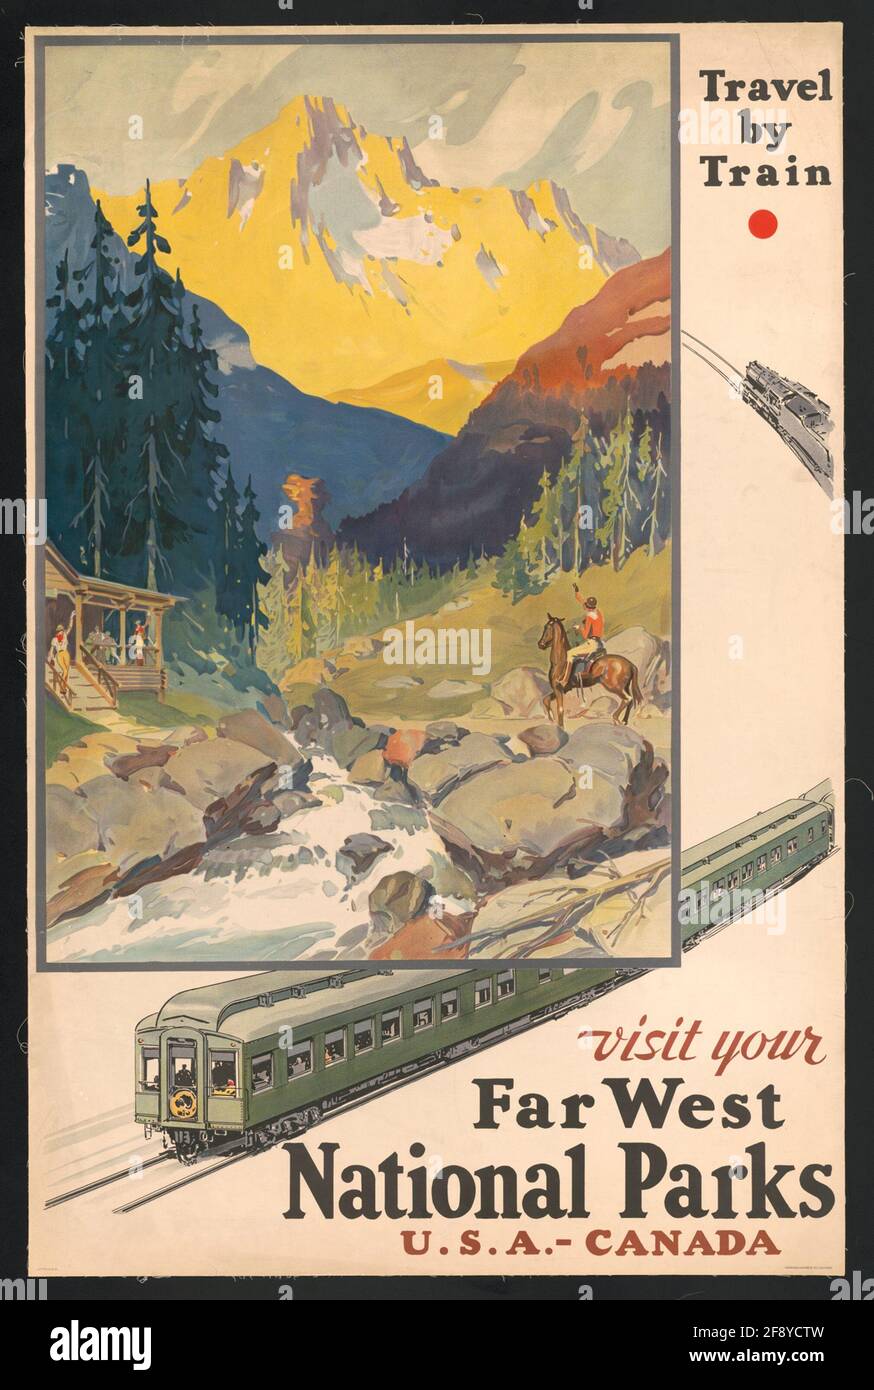 Une affiche de voyage vintage pour les parcs nationaux de l'extrême-Ouest Aux États-Unis Banque D'Images